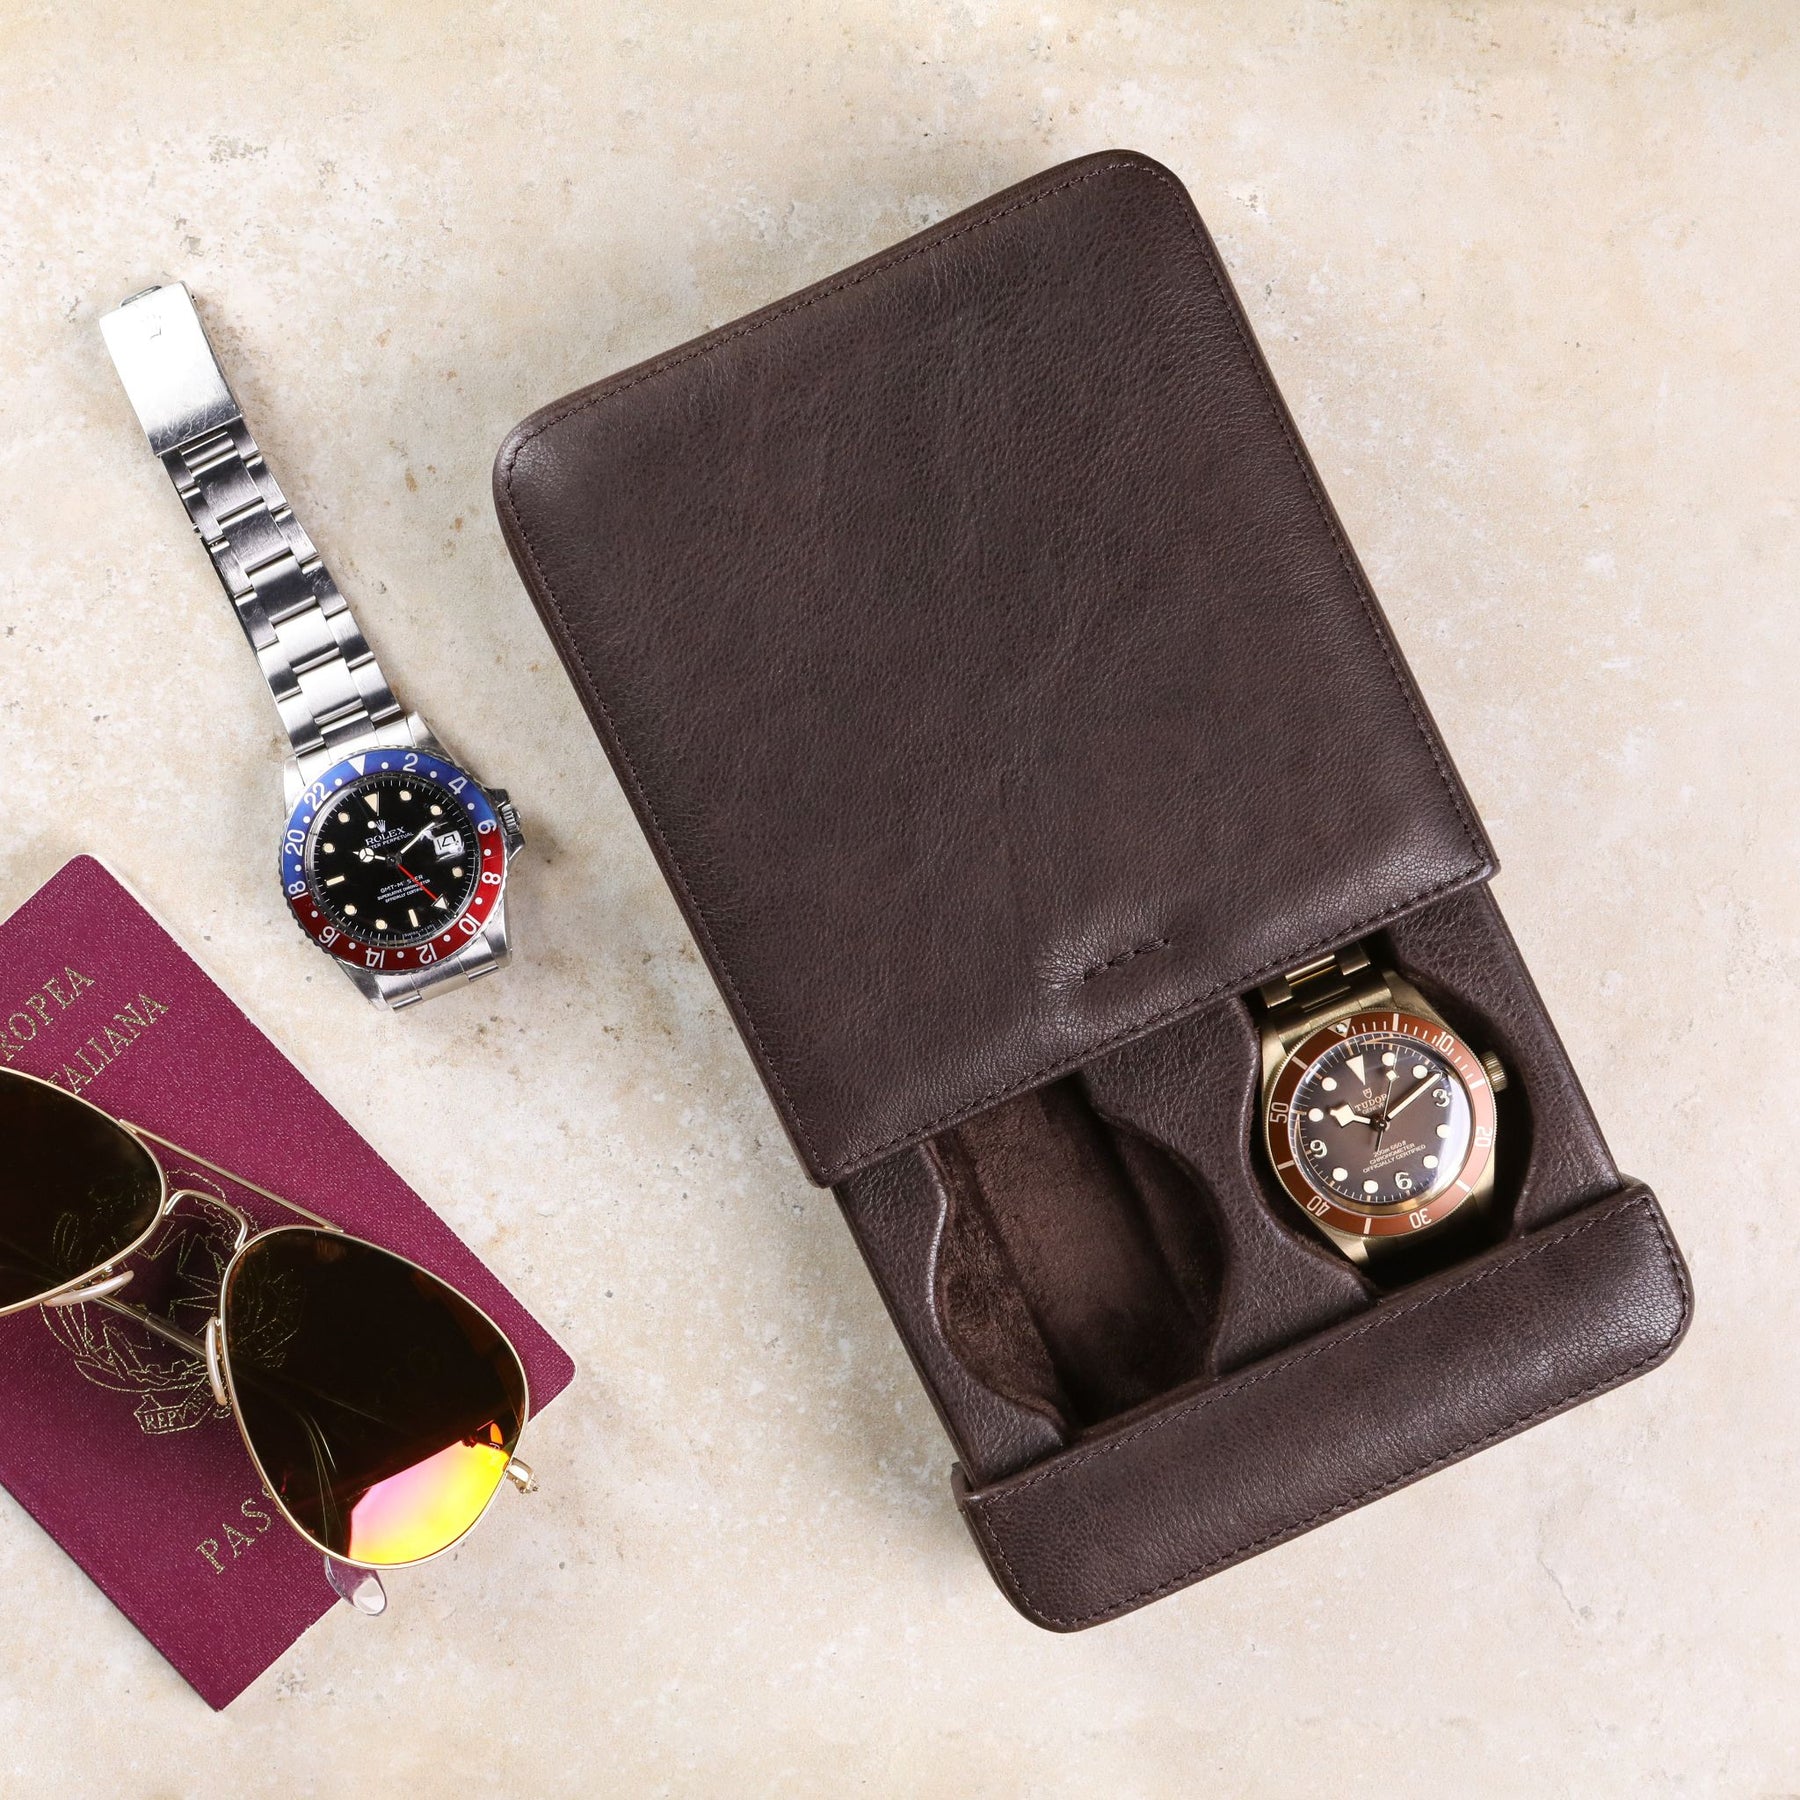 Porta orologi a scorrimento in pelle lavata color testa di moro con passaporto, occhiali da aviatore, Tudor Bronze e Rolex GMT Master II